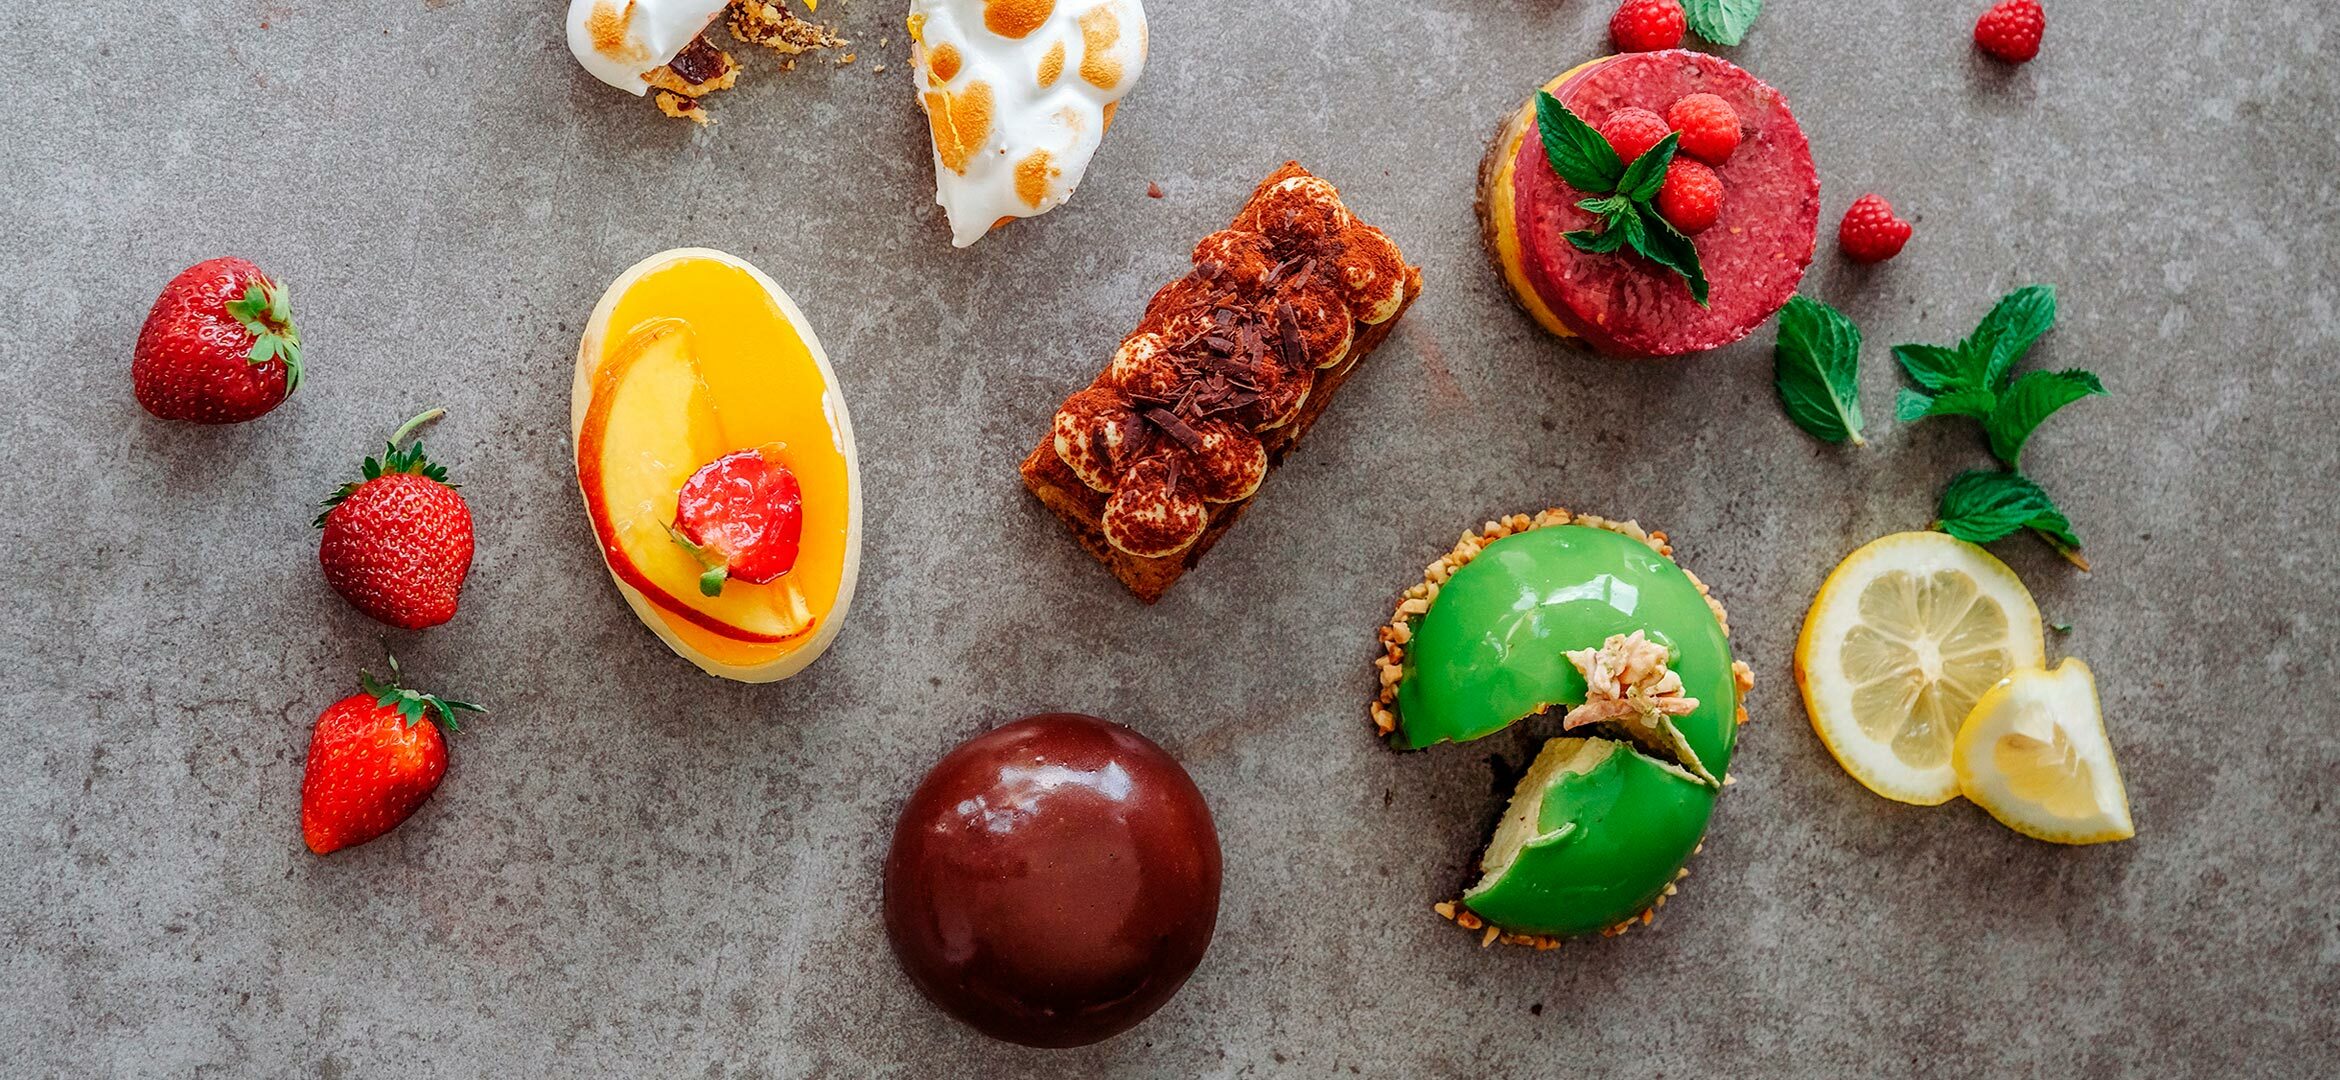 Blick auf Süßspeisen – Kuchen, Tiramisu, Schaumgebäck – die auf einer grauen Schieferplatte angerichtet sind. Dazwischen Erdbeeren und Minzblätter.